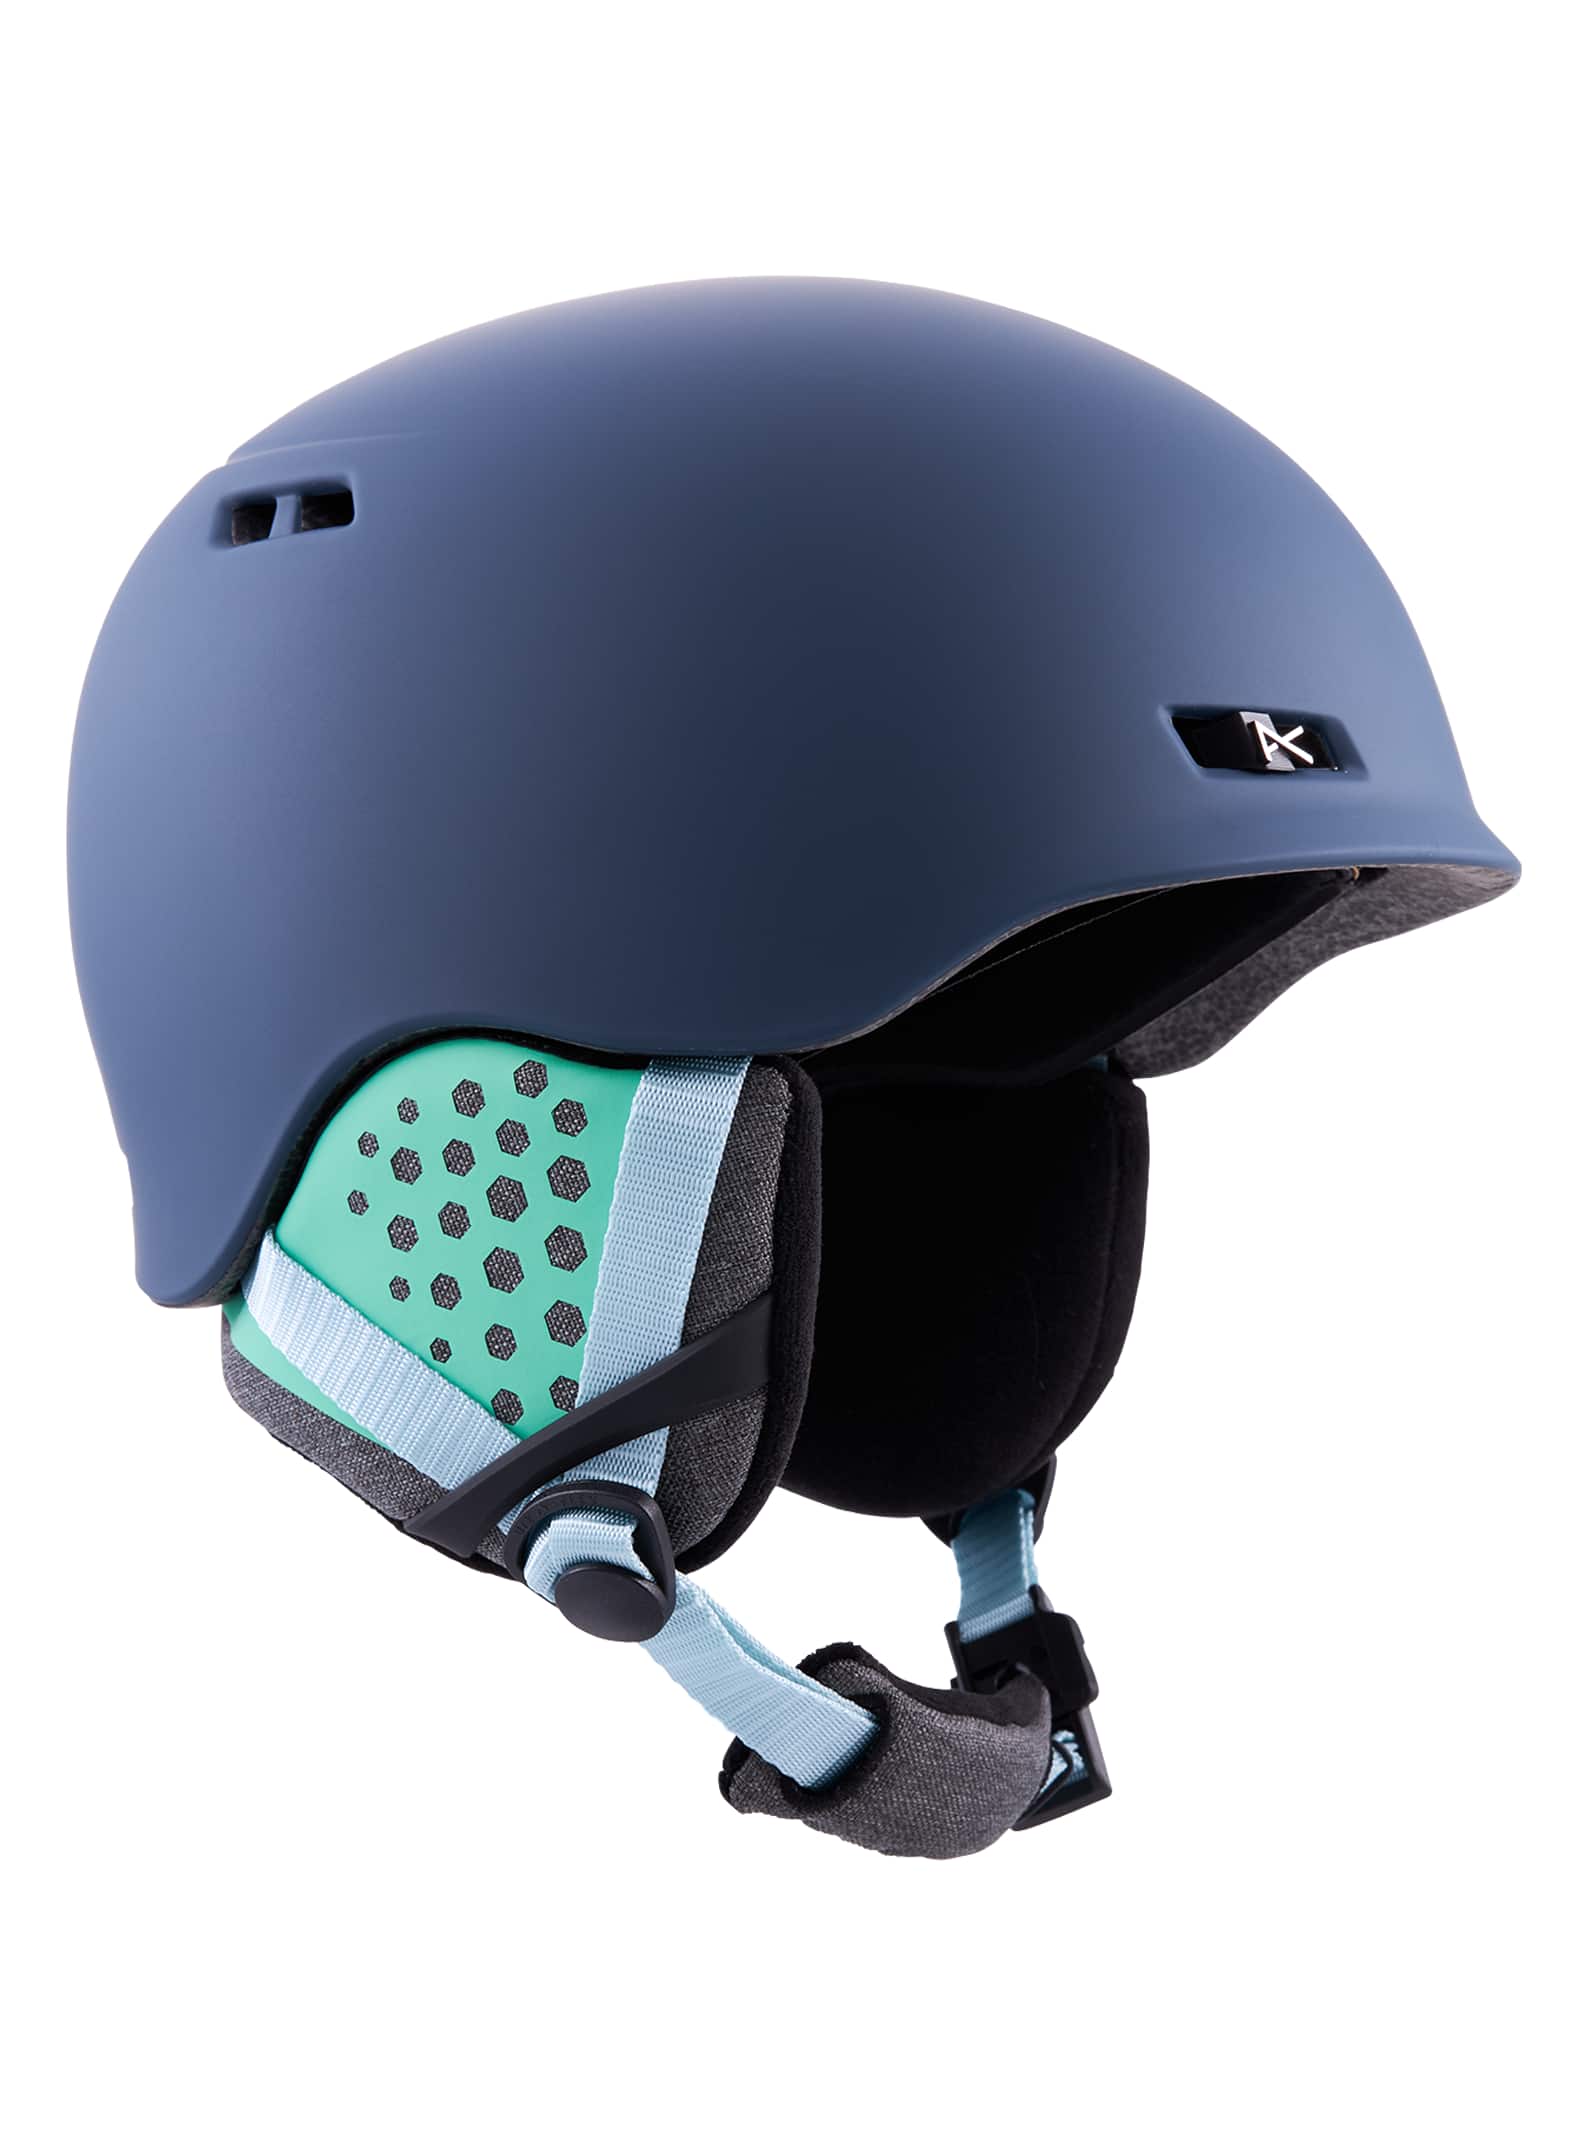 Men's Helmets | Ski Snowboard Helmets for Women | Optics